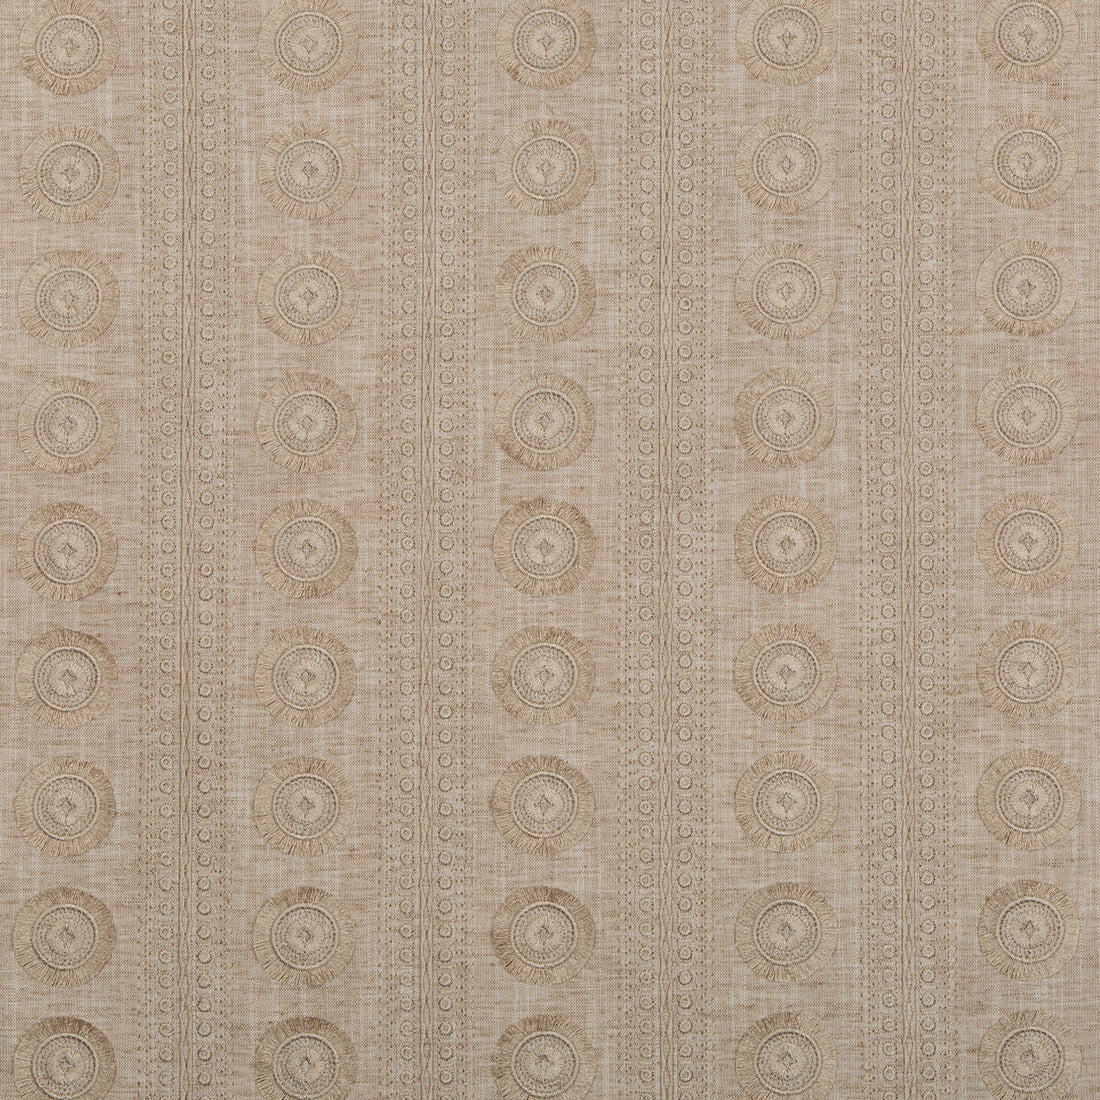 Kravet Basics fabric in 4688-16 color - pattern 4688.16.0 - by Kravet Basics